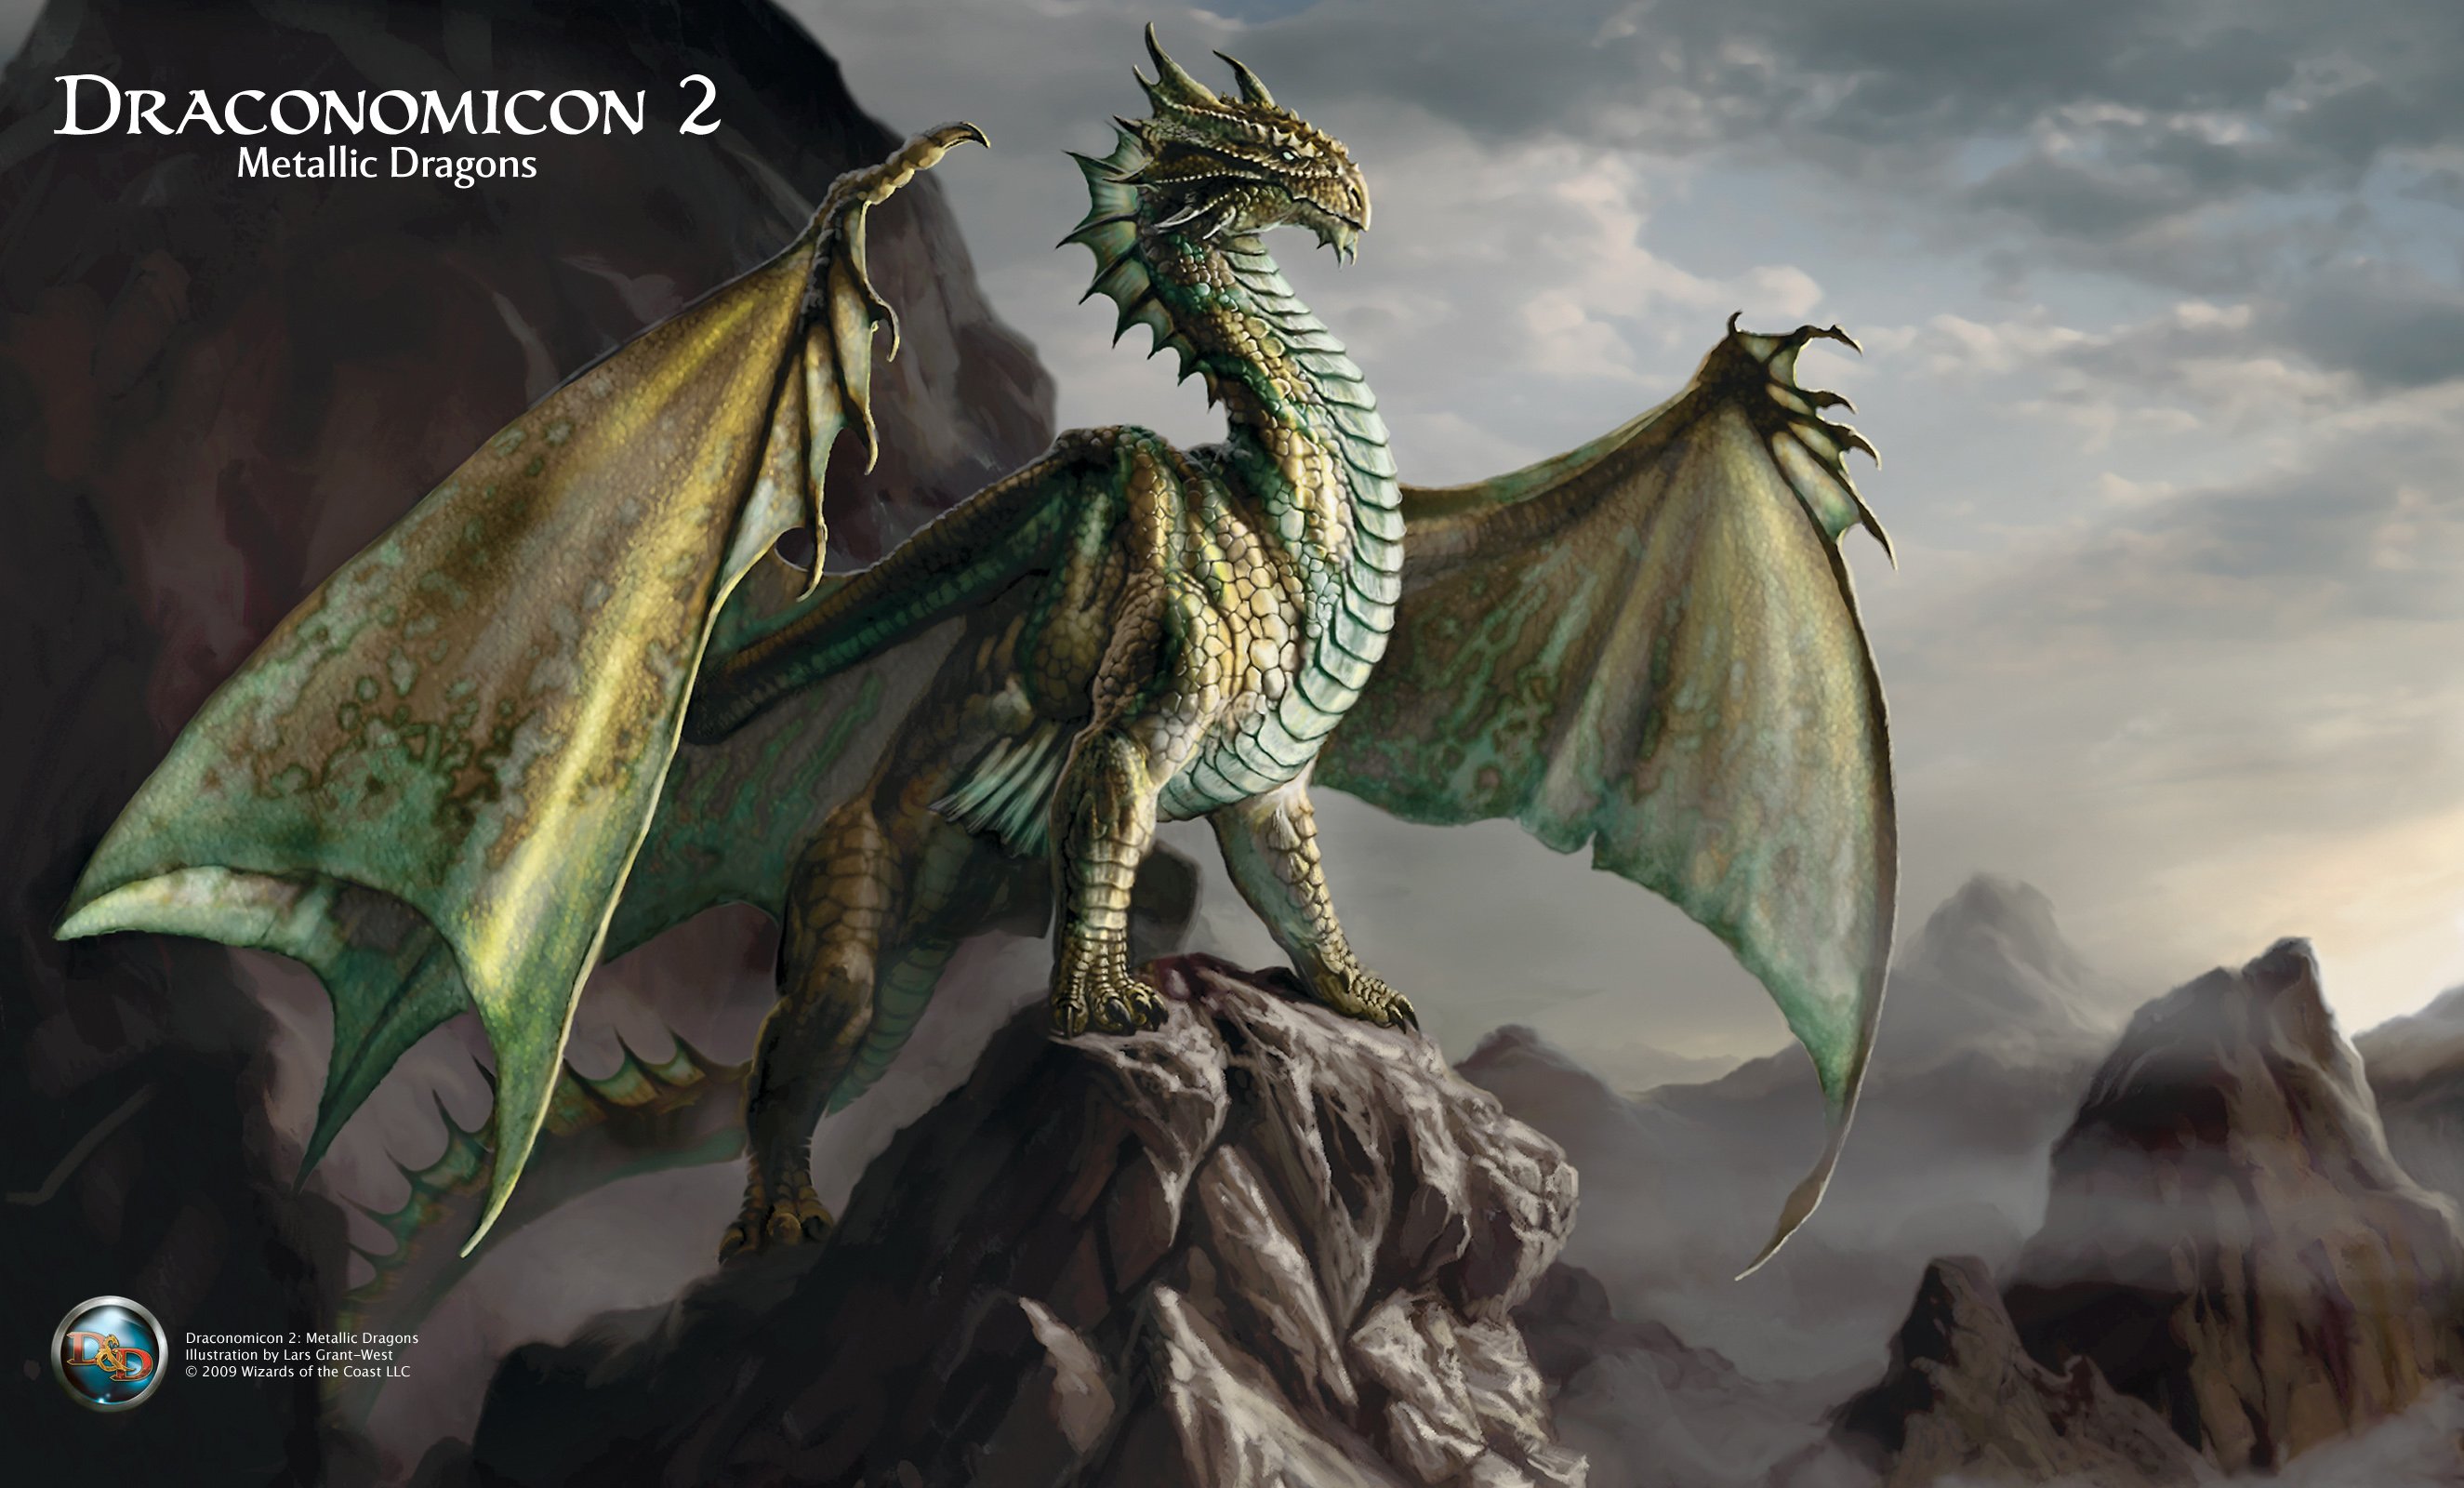 draconomicon metallic dragons, Dungeons, Dragons, Metallic, Draconomicon, Fantasy, Board, Rpg, Dragon Wallpaper